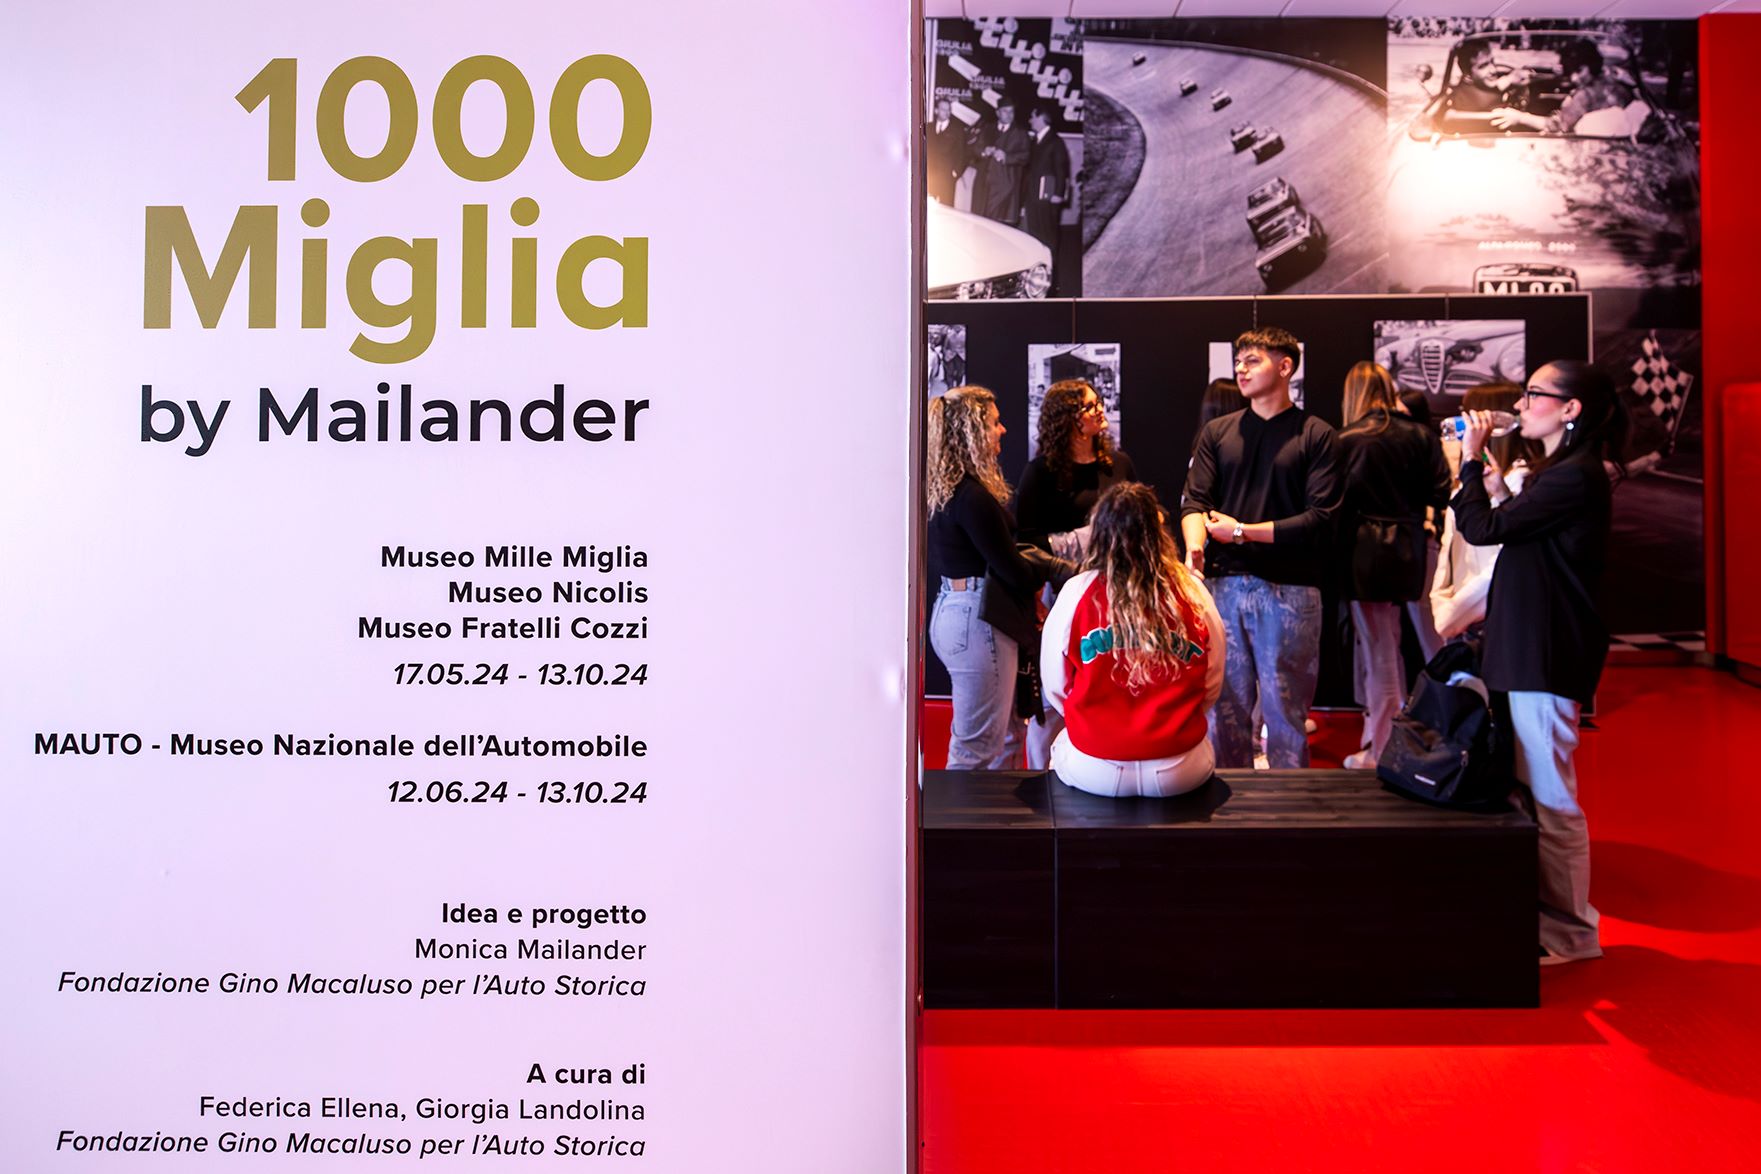 1000 Miglia By Mailander